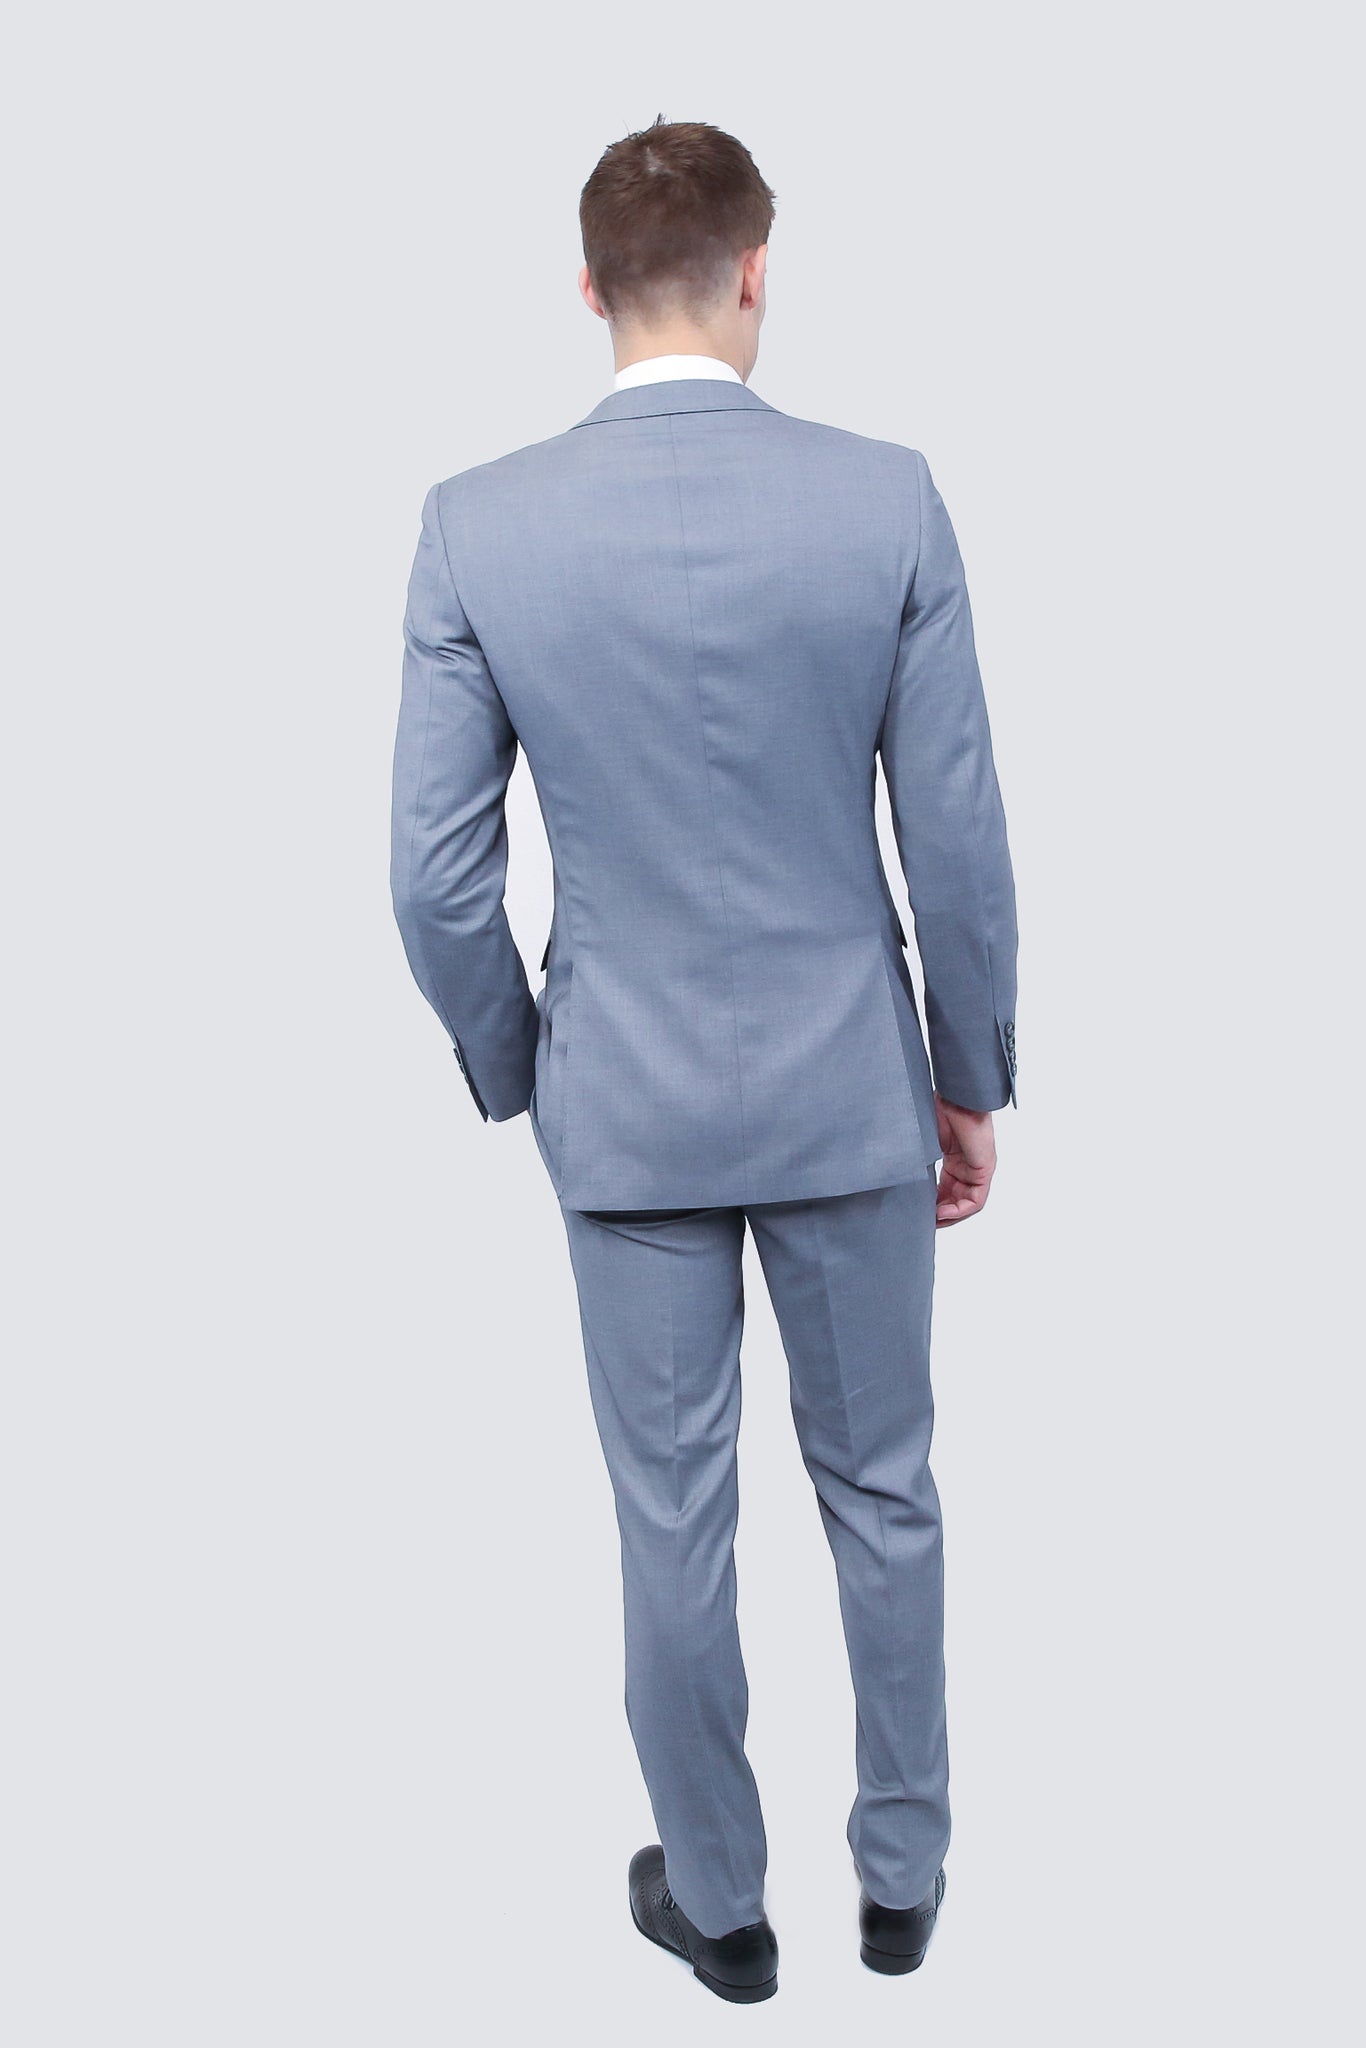 Tailor's Stretch Blend Suit | Shark Grey Modern or Slim Fit - My Men's Shop